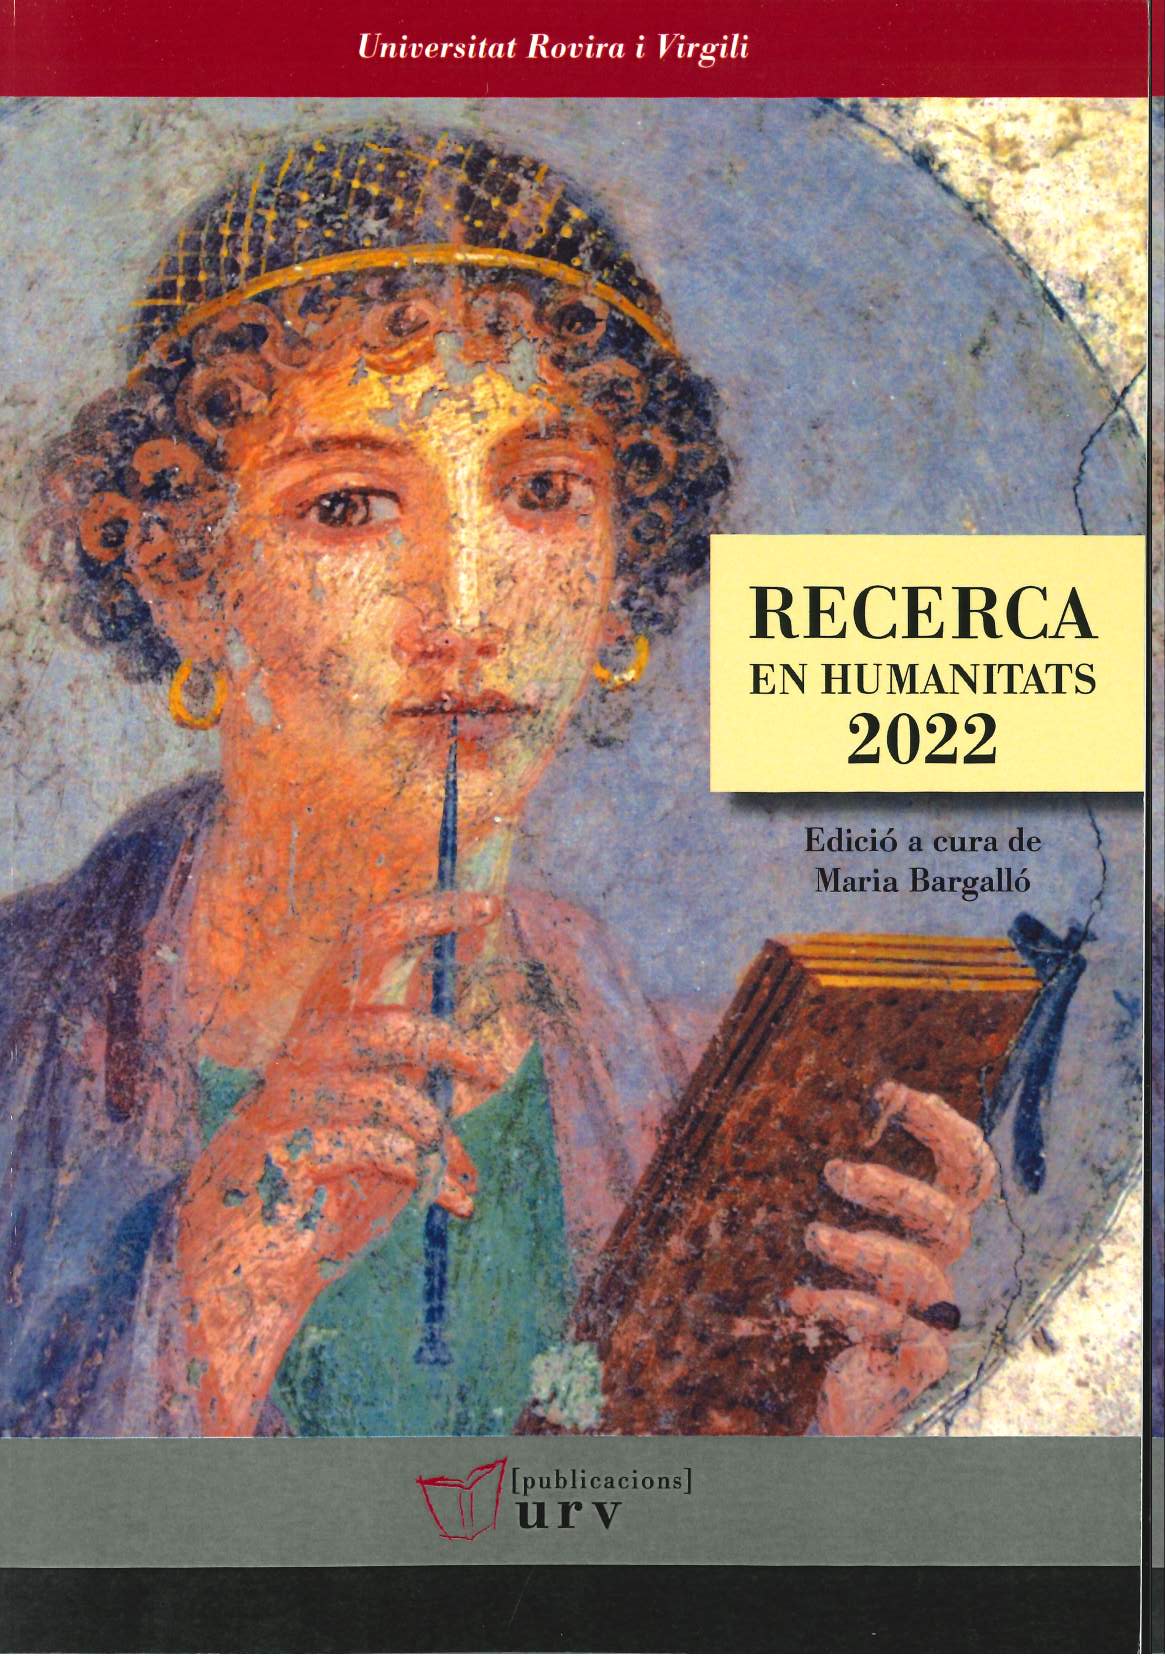 Imagen de portada del libro Recerca en humanitats 2022